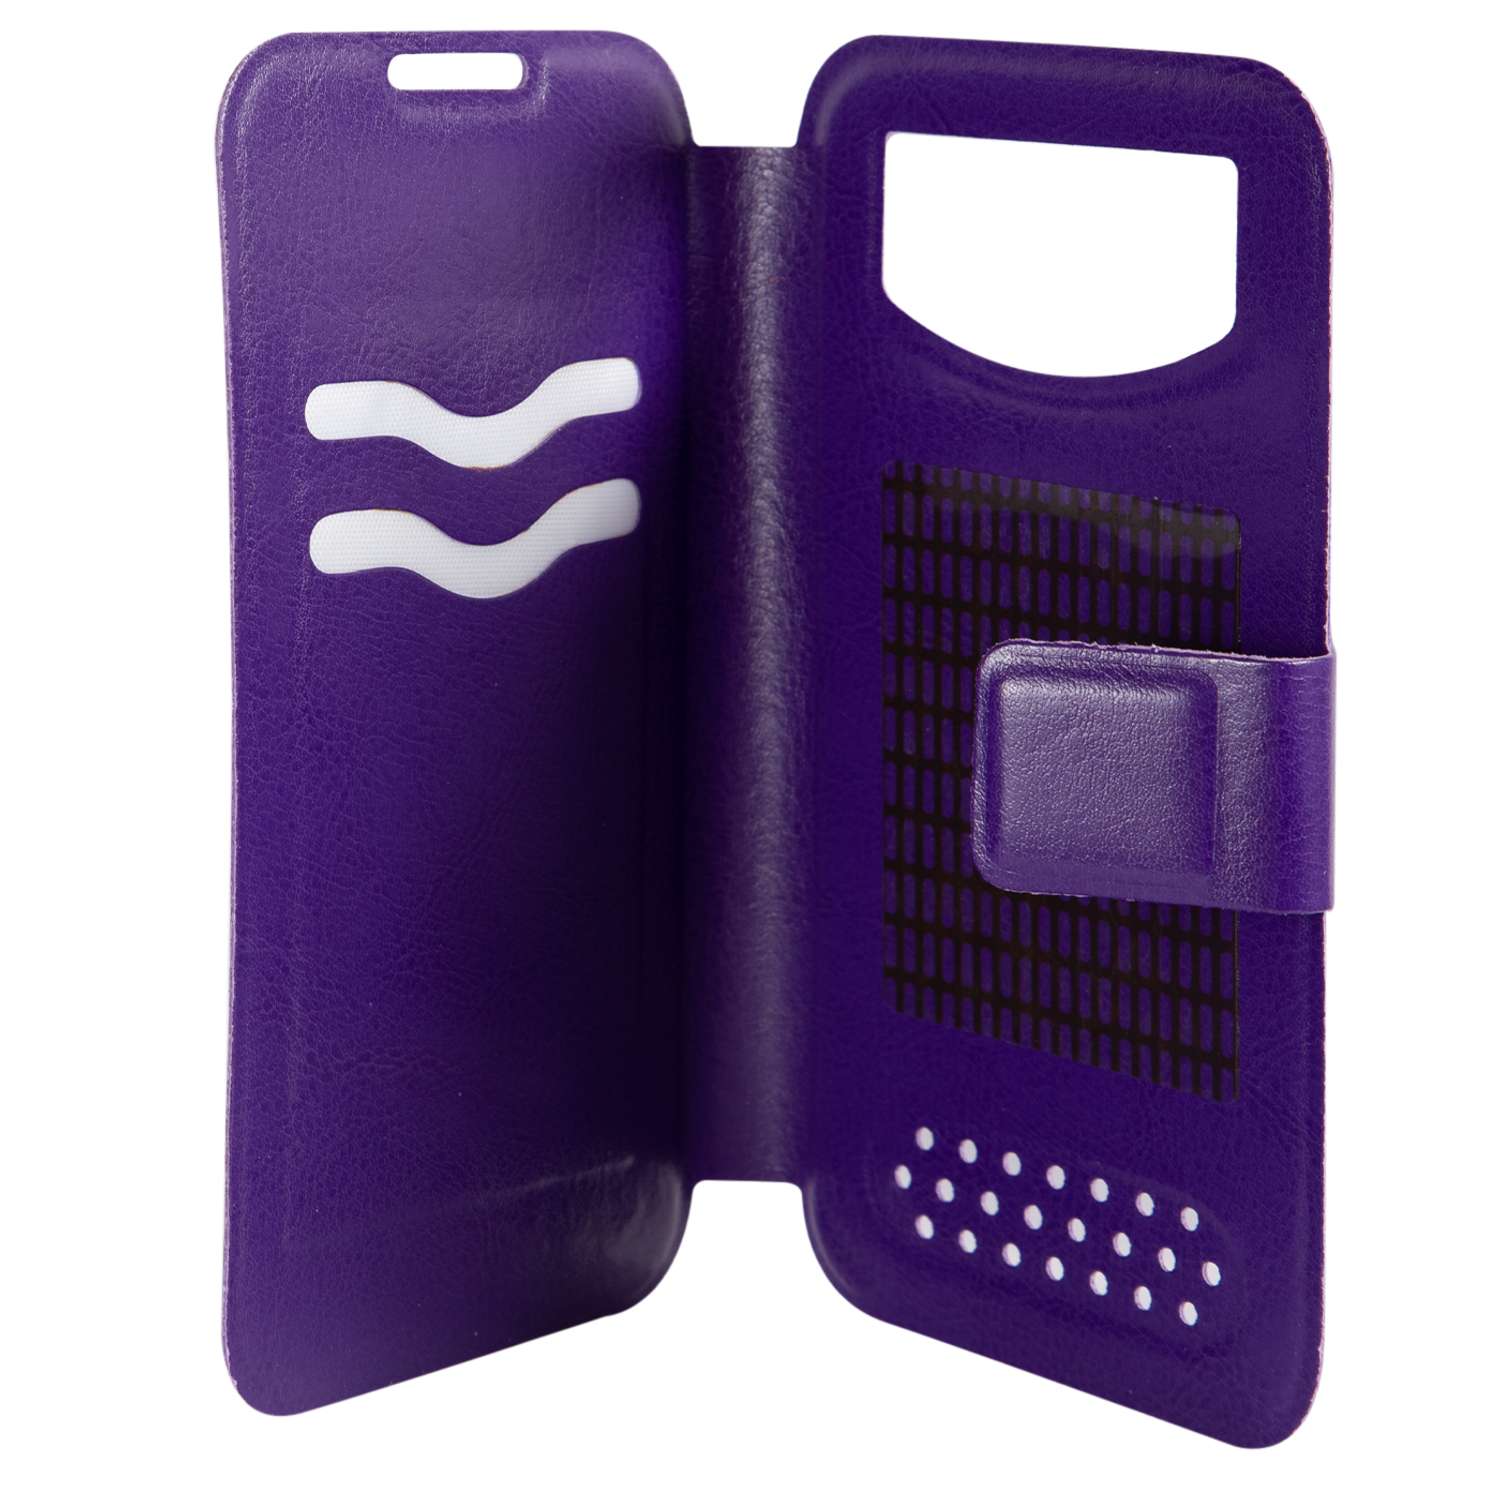 Чехол универсальный iBox Universal для телефонов 4.2-5 дюйма фиолетовый - фото 1